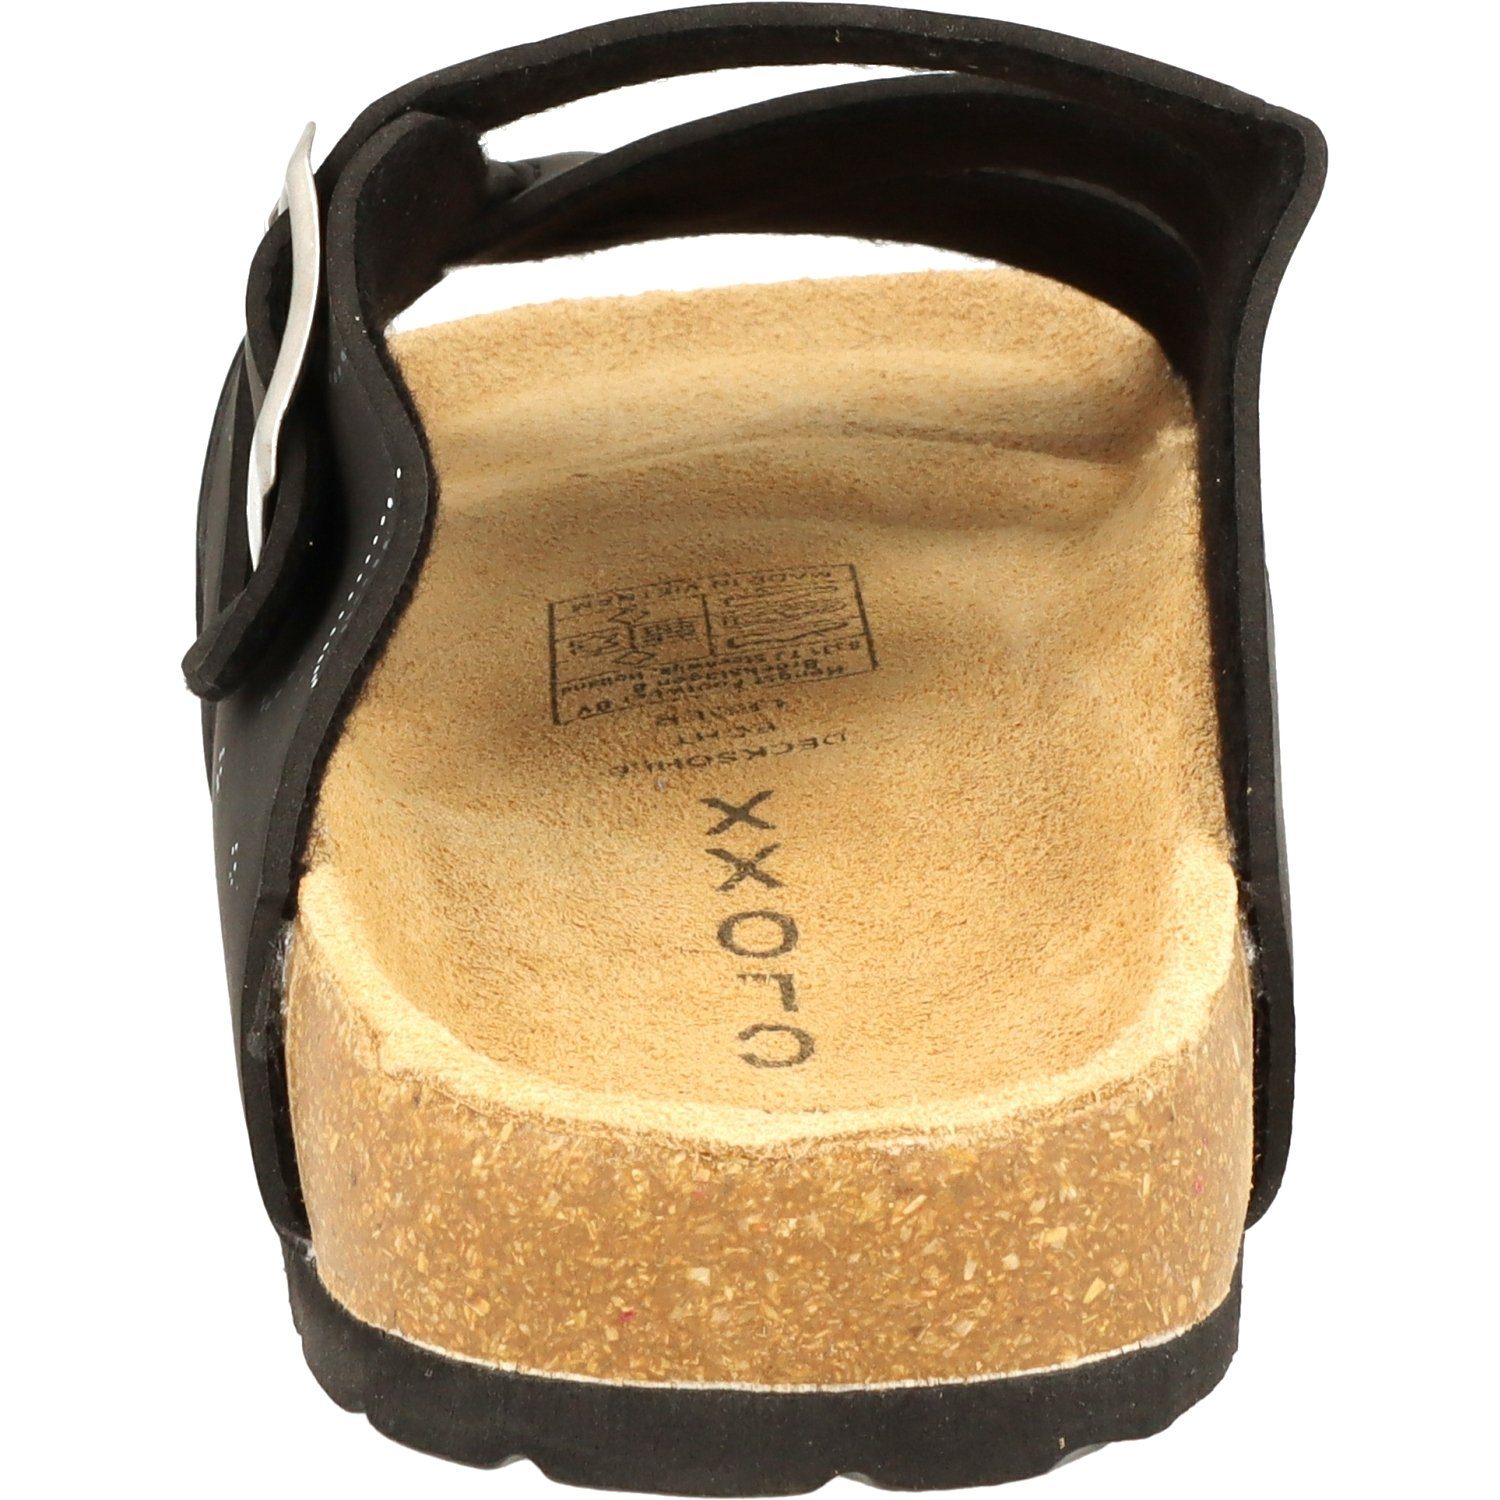 Cloxx Hausschuhe T67913 Schwarz Lederfußbett Schuhe Damen Sandale Pantolette